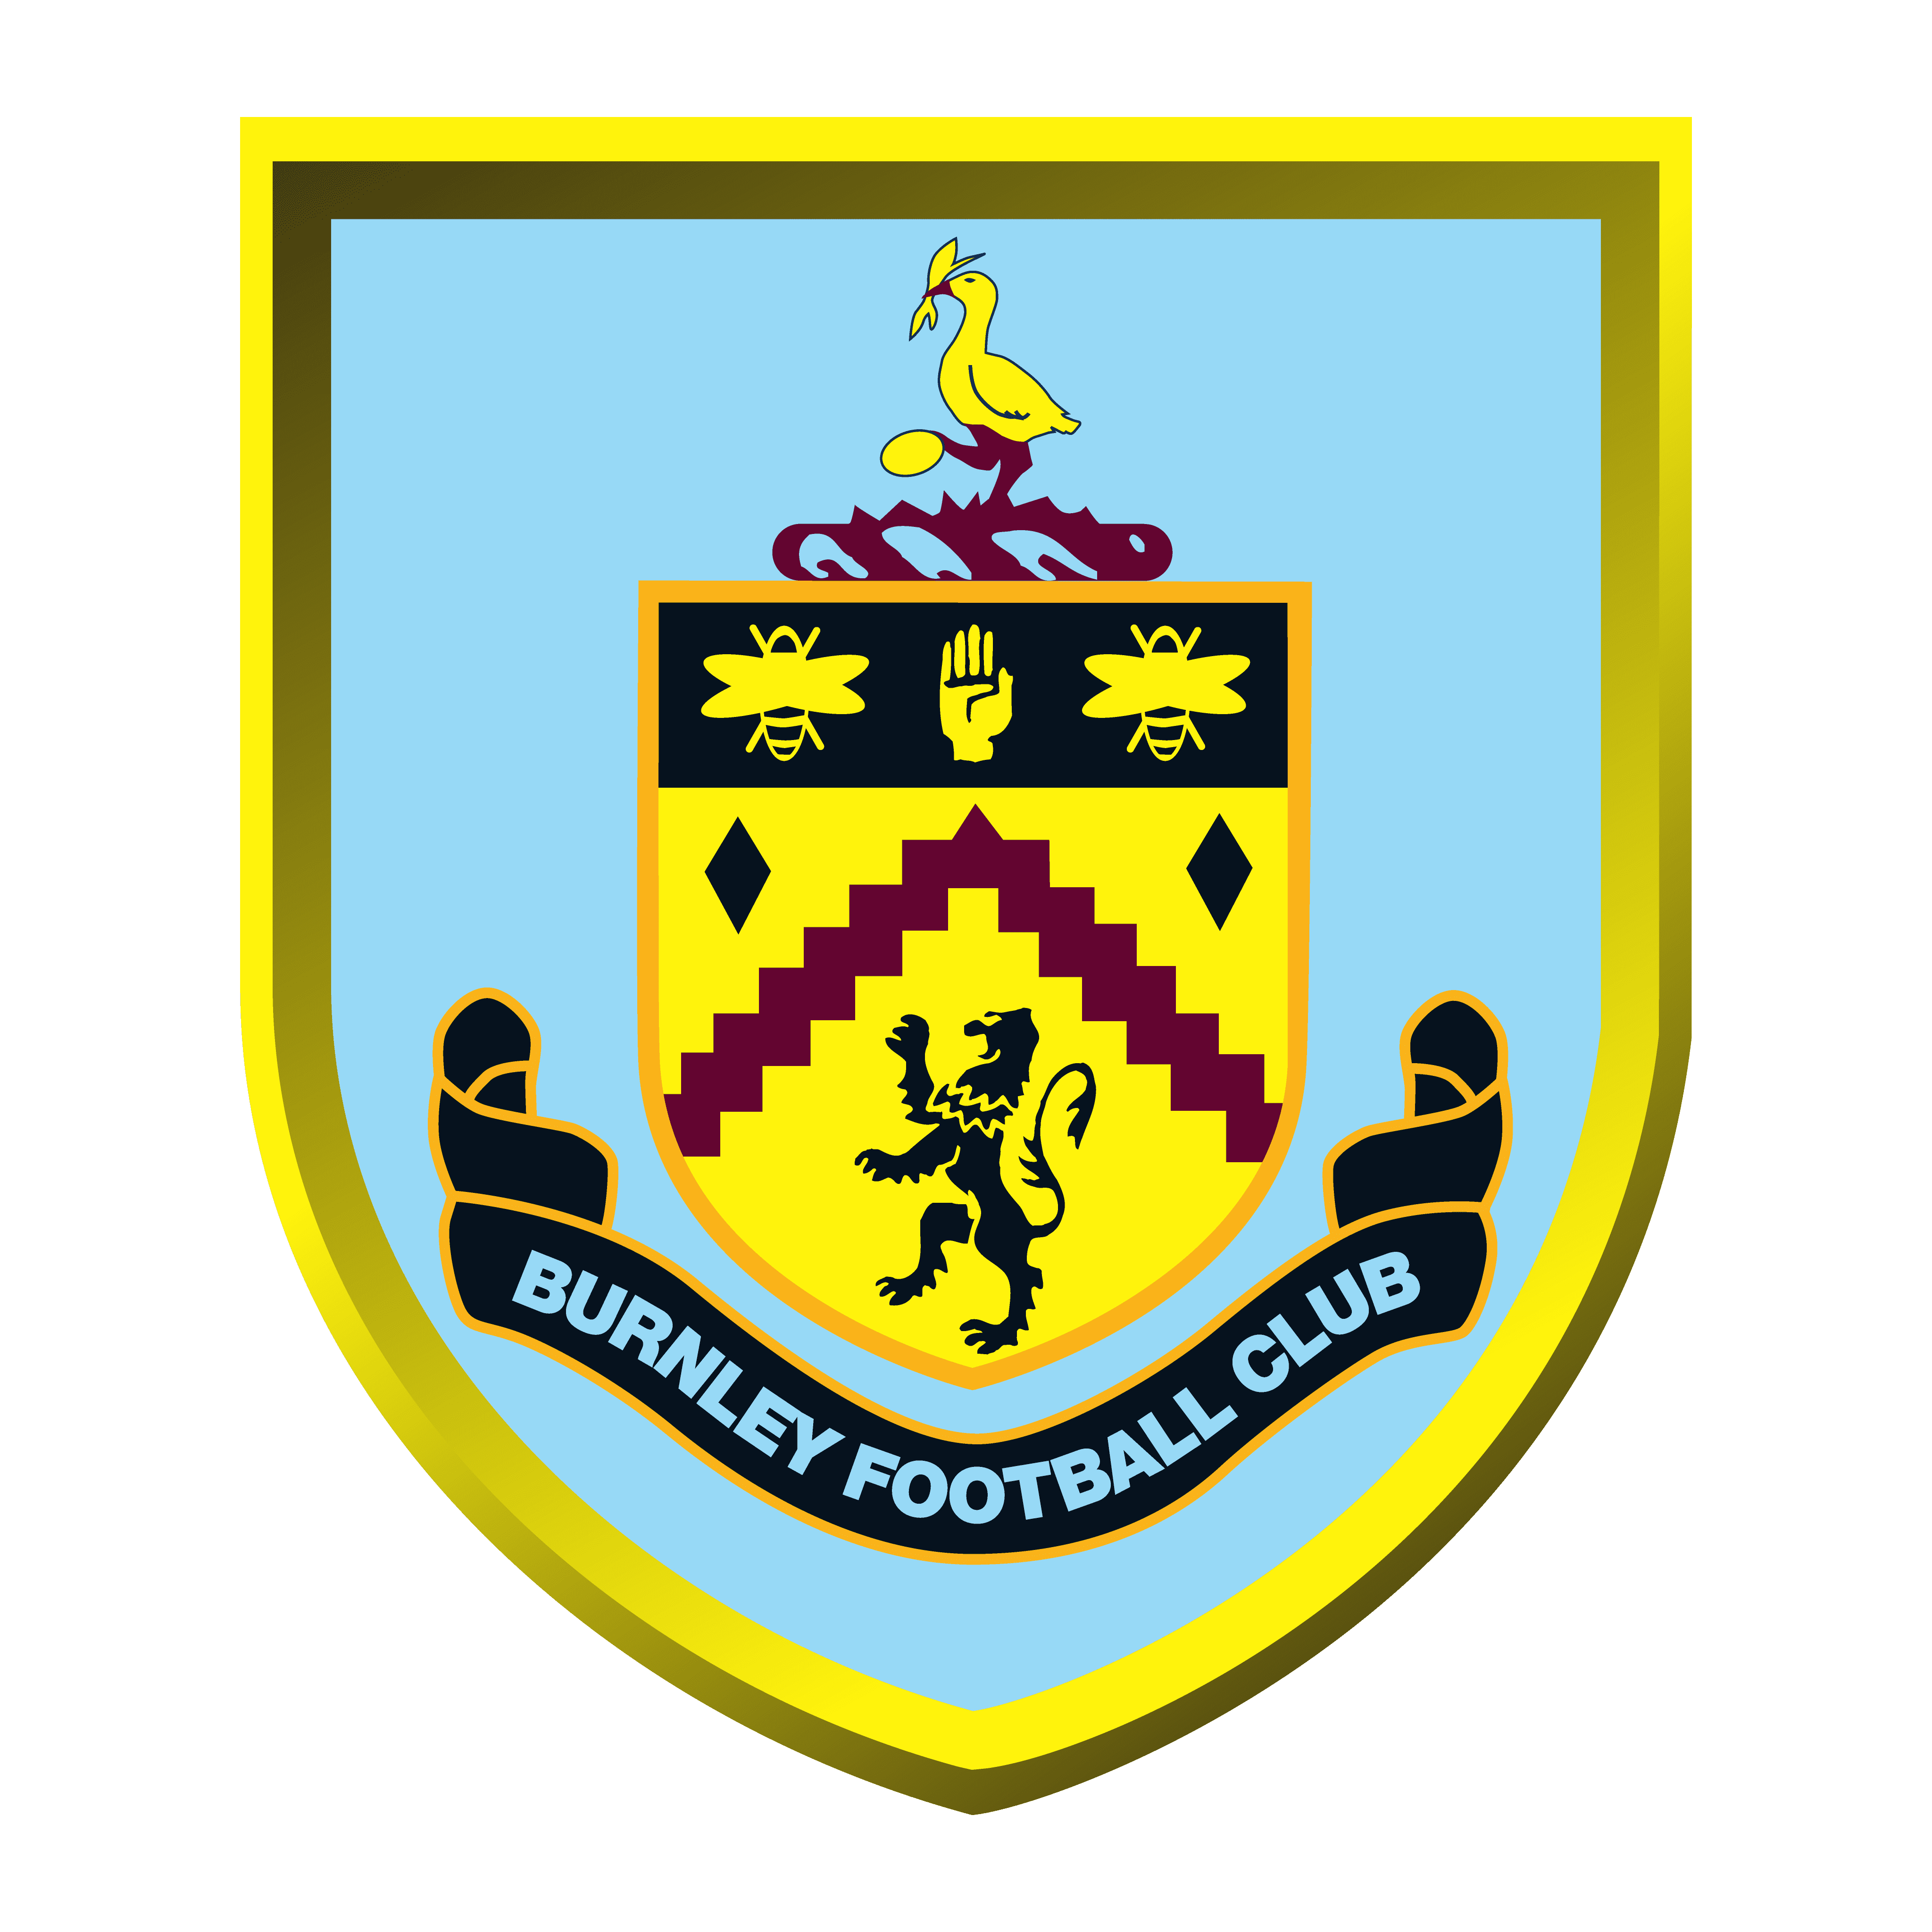 logo burnley football club